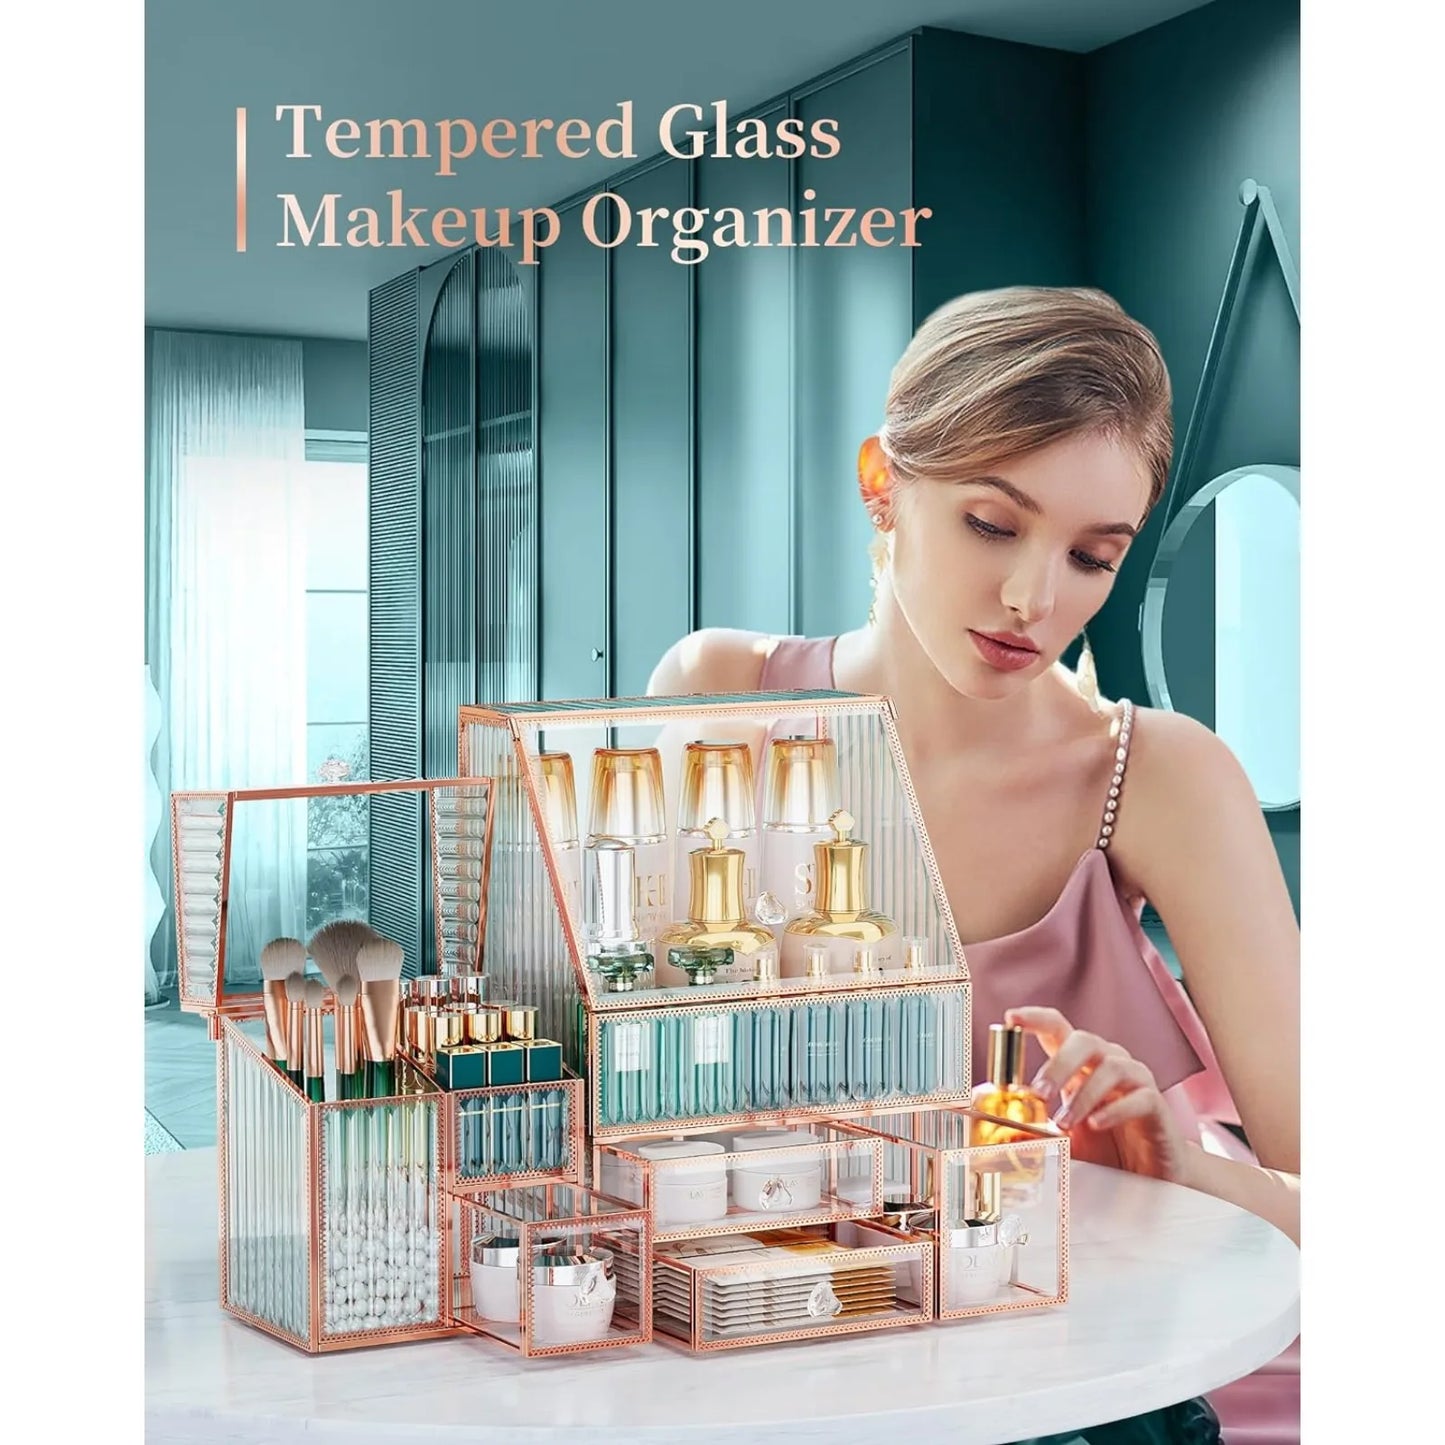 Tempered Glass Makeup Organizer, Countertop